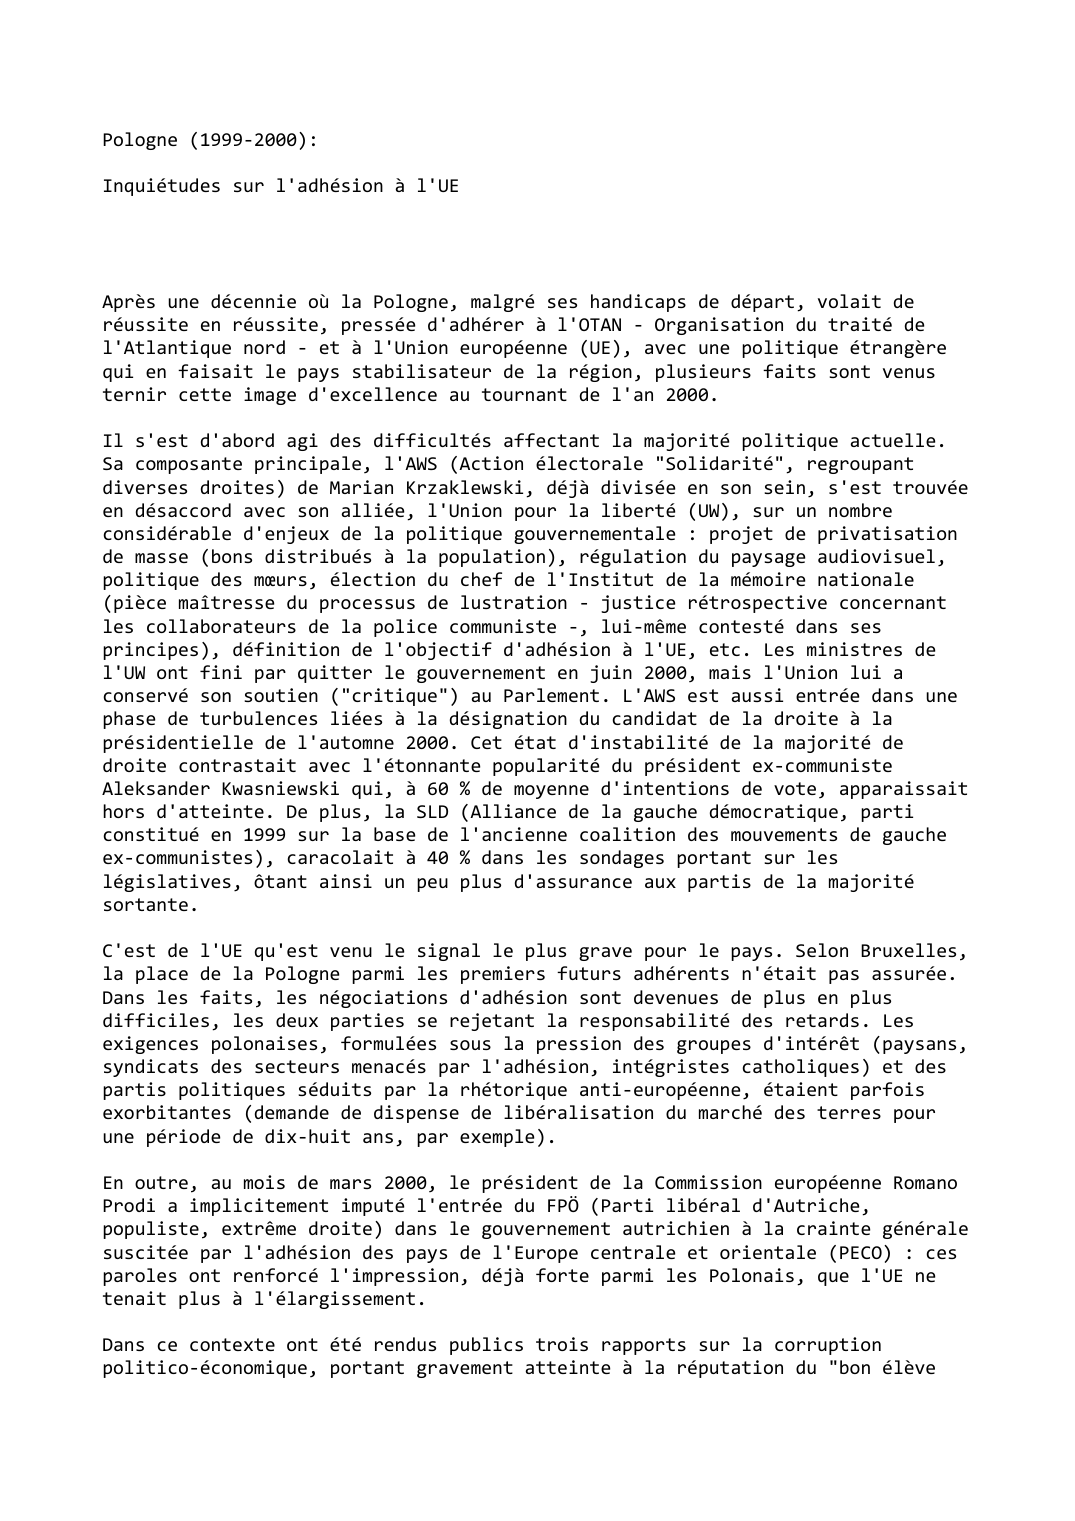 Prévisualisation du document Pologne (1999-2000):

Inquiétudes sur l'adhésion à l'UE